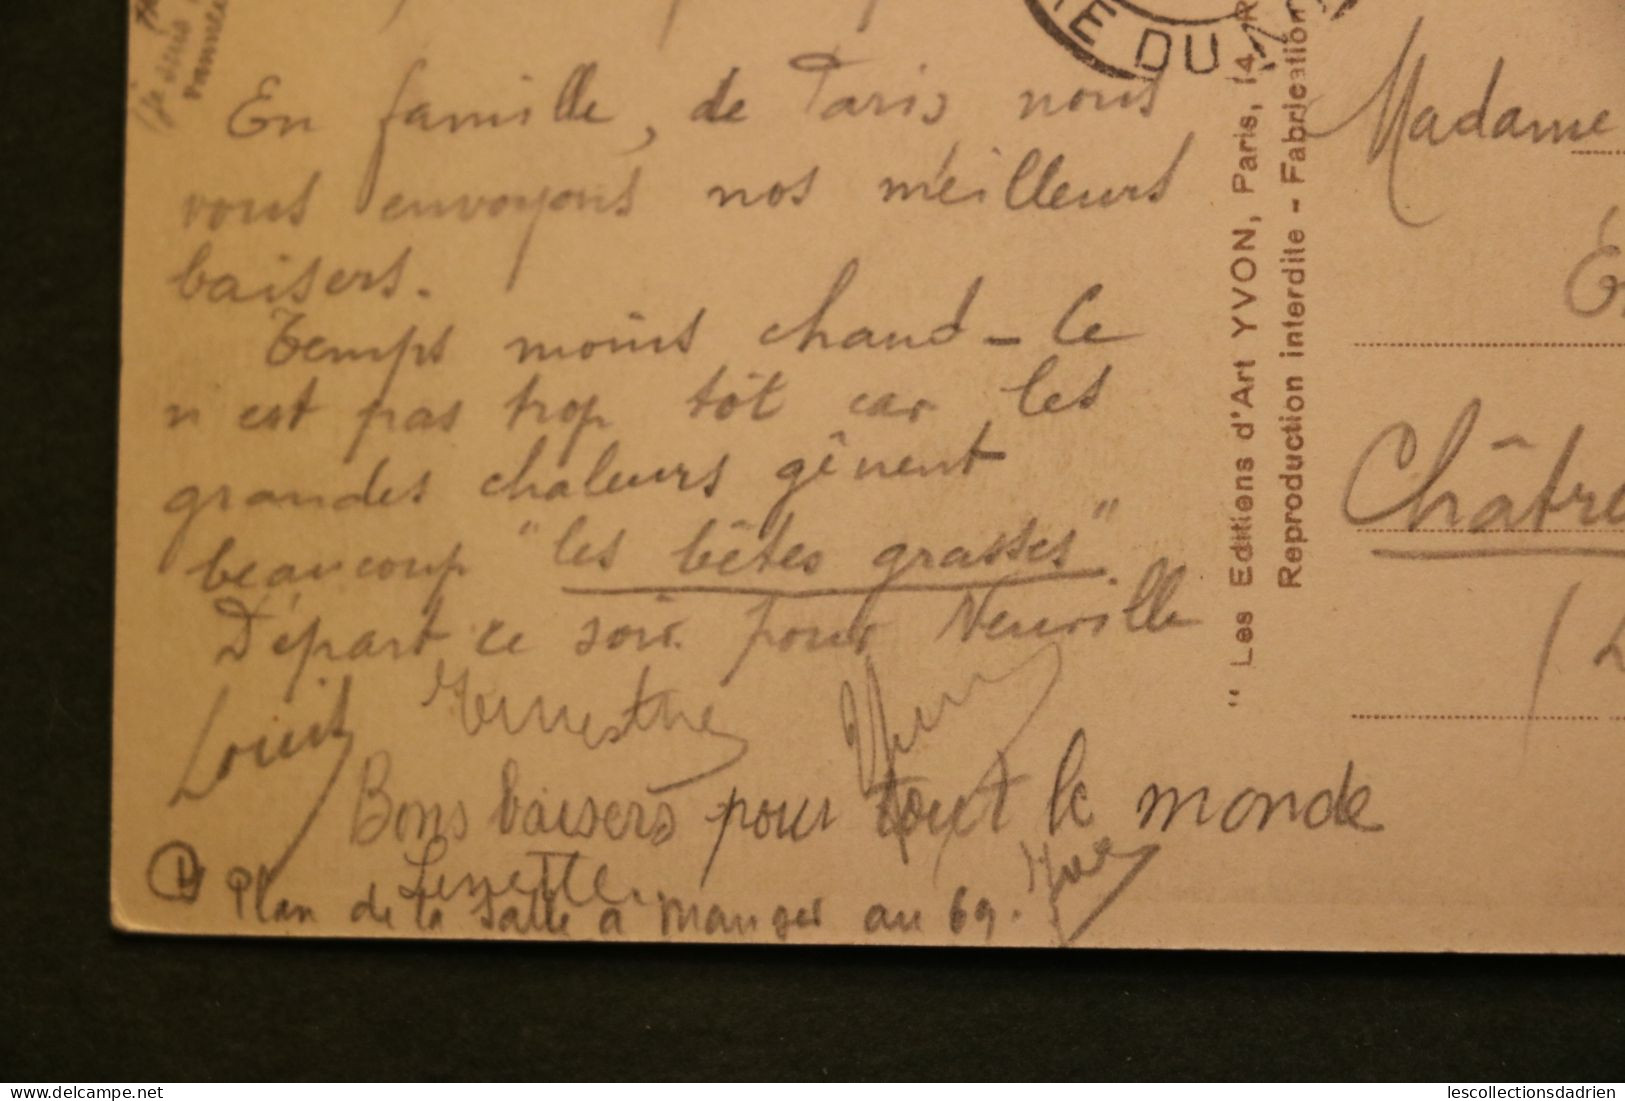 Carte postale ancienne - Paris - perspective de la Seine Paris en flanant calèche 1933 - Gare du Nord oblitération